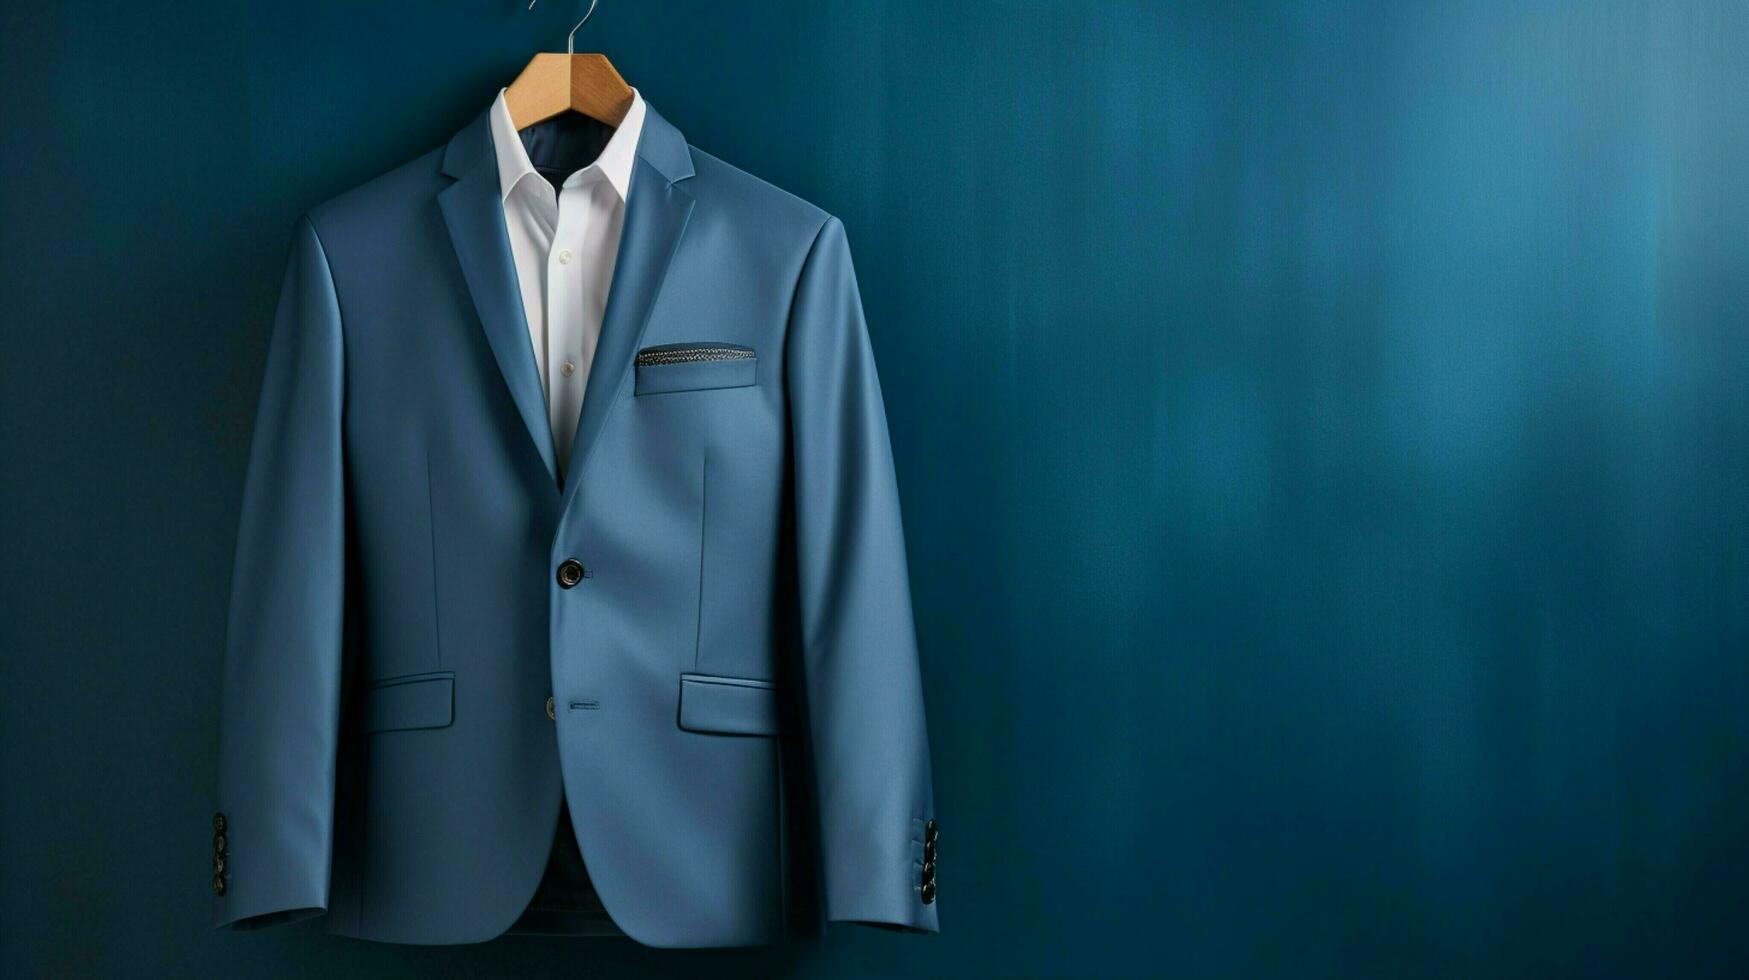 luxury blue suit jacket on coathanger background photo